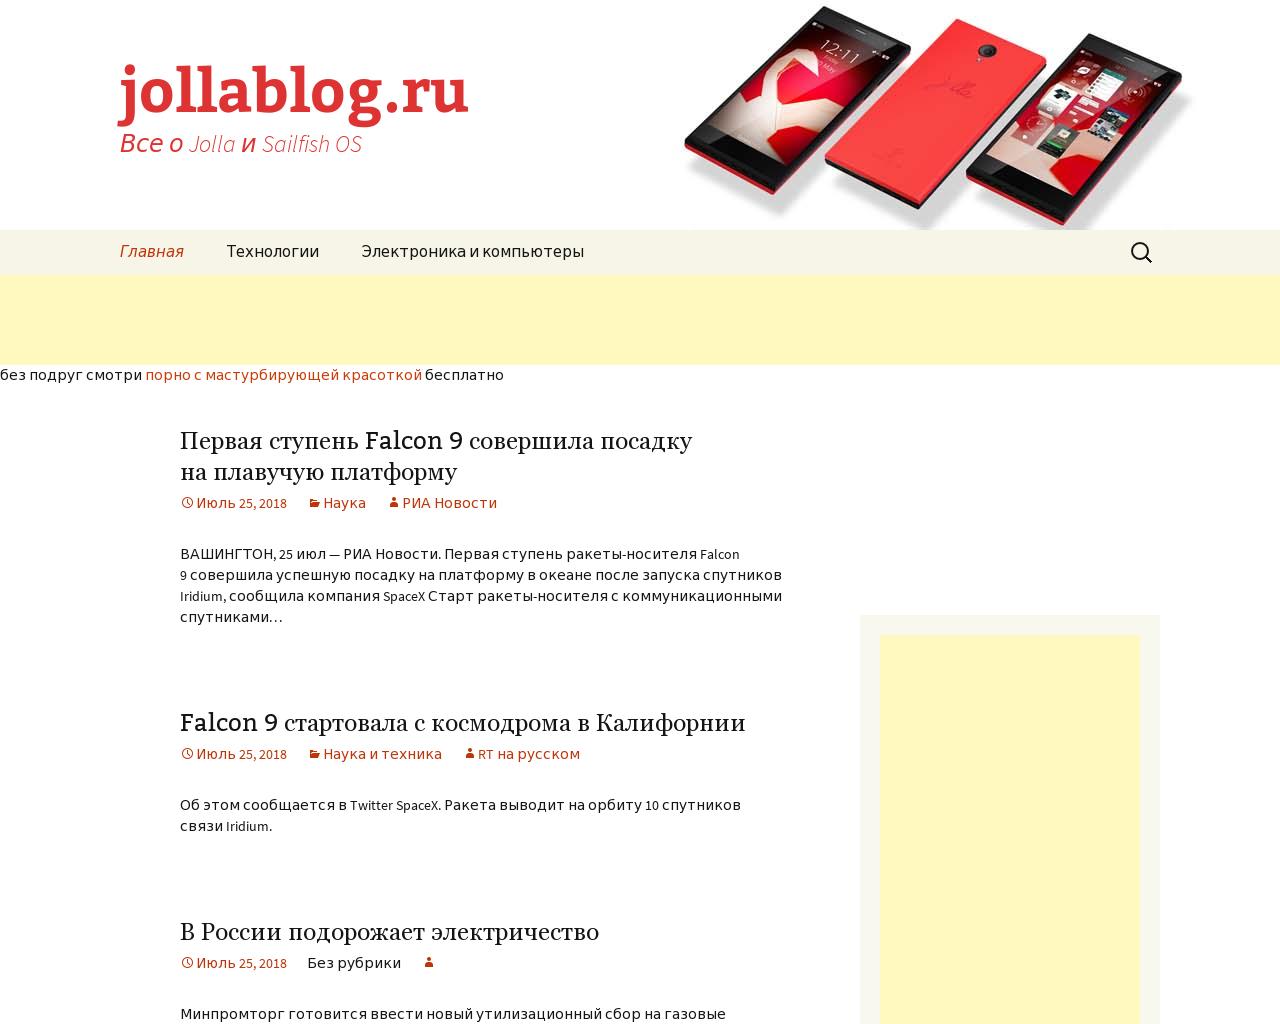 Изображение сайта jollablog.ru в разрешении 1280x1024